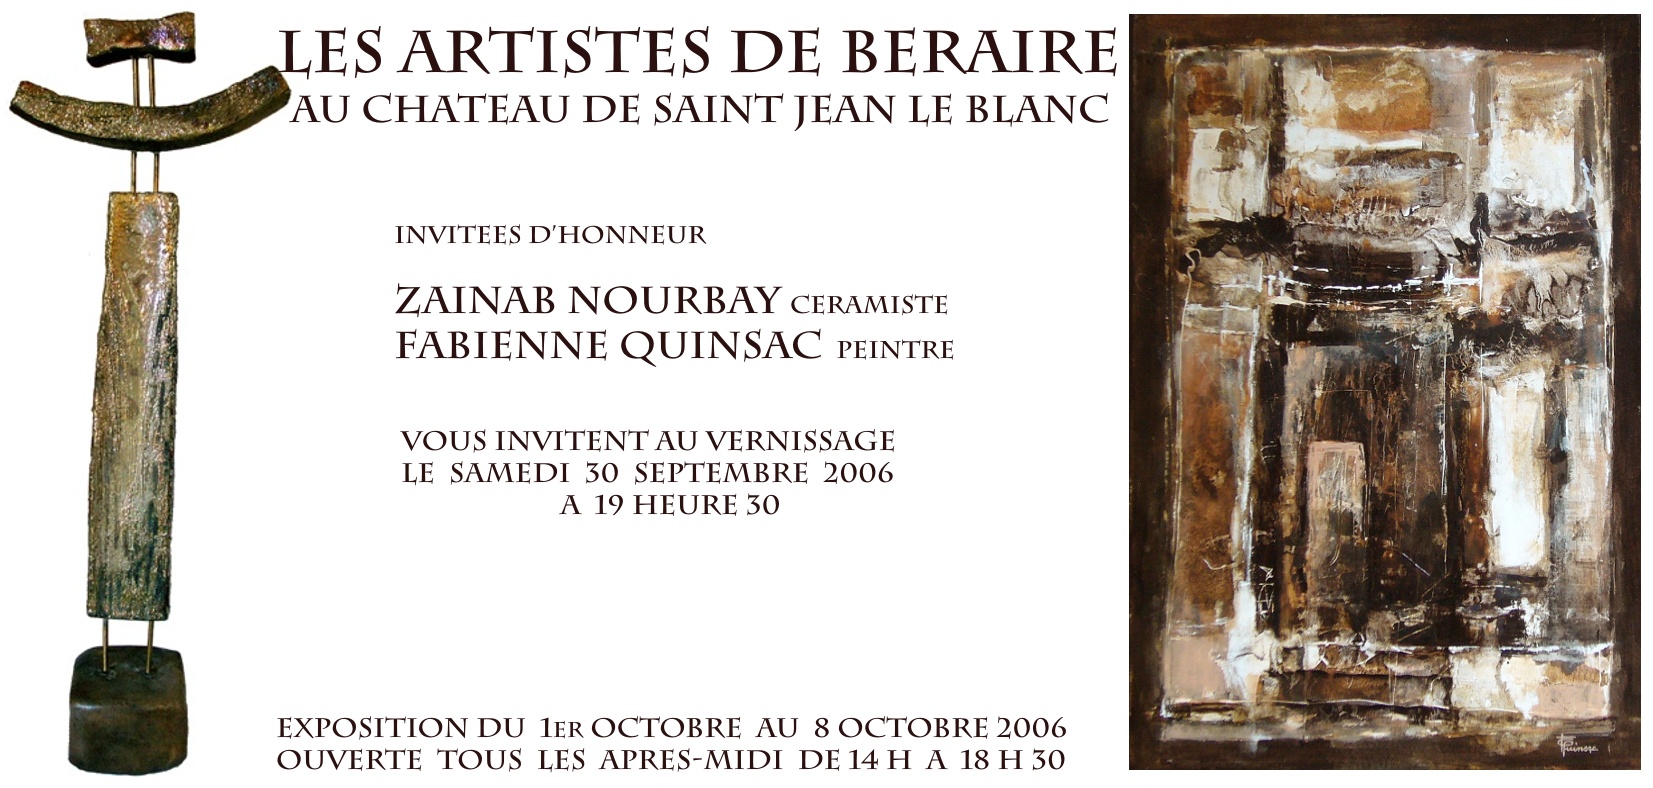 Fabienne Quinsac (peintre) & Zainab Nourbay (cramiste) invites d'honneur de l'exposition des Artistes de Braire, au chteau de Saint-Jean-le-Blanc - 2006